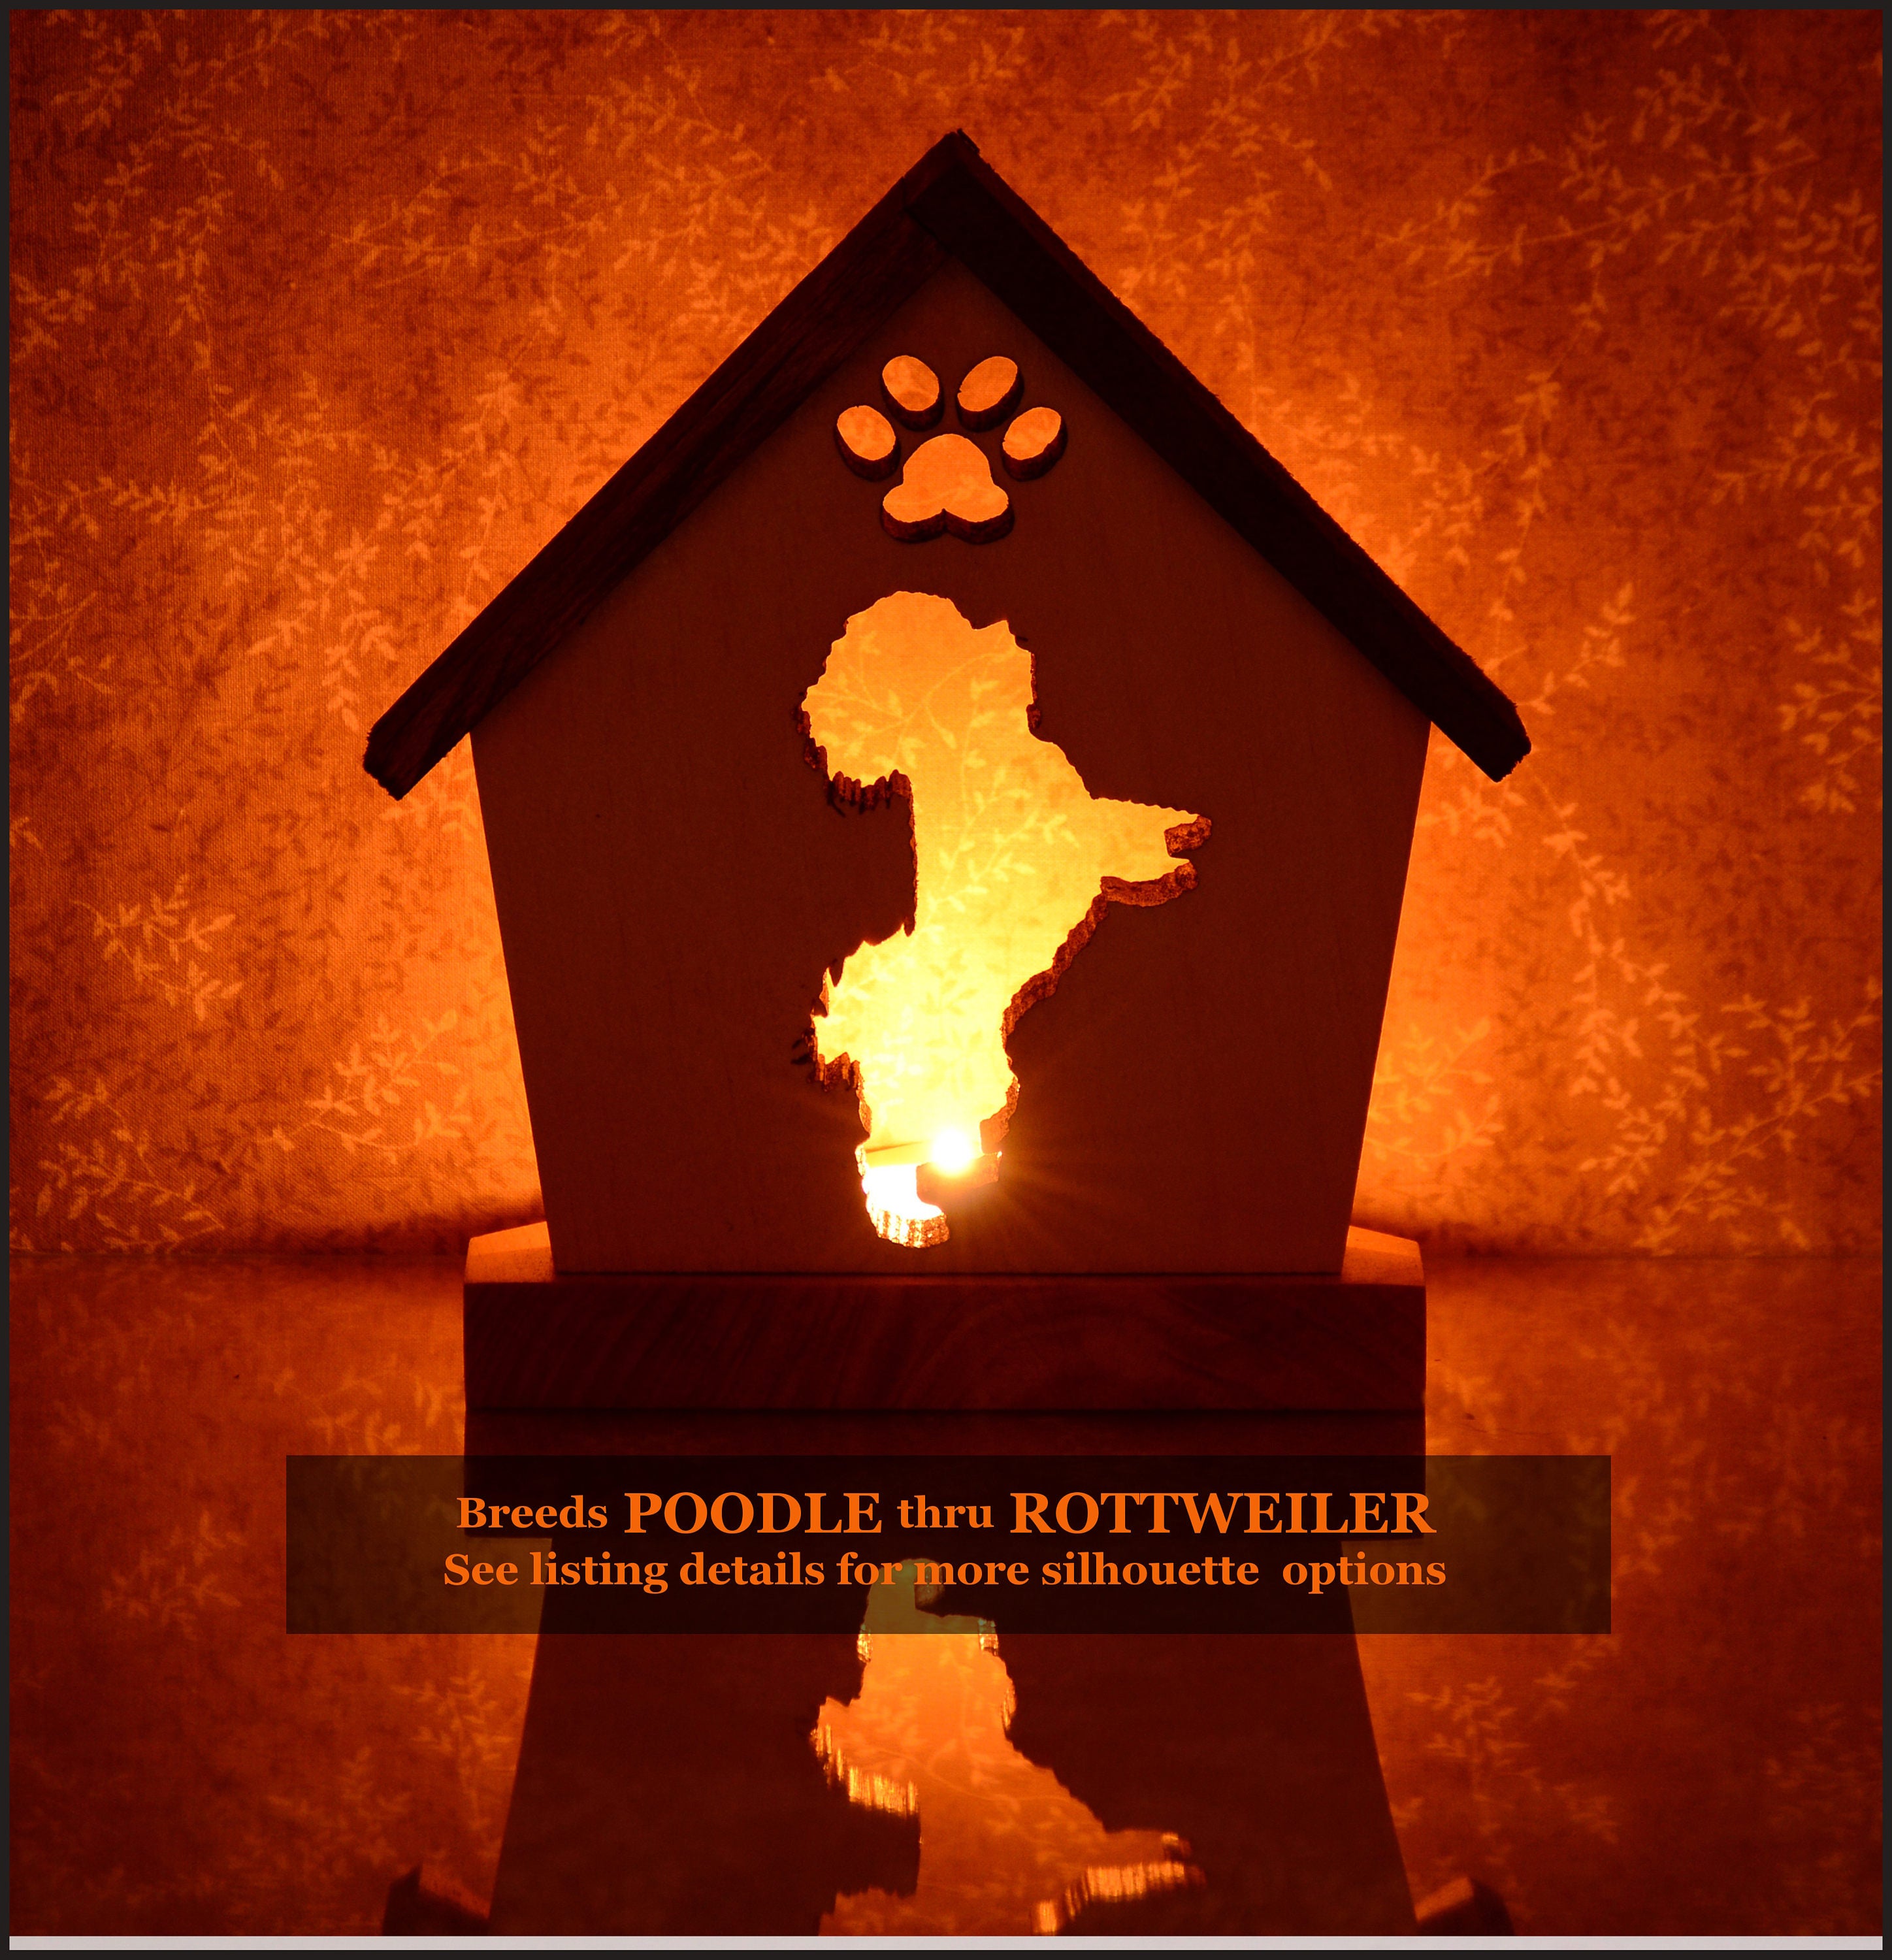 Personalized Gift For Dog Loverspet Memorialcandle Tealight Holder | Poodlepugrottweiler Unique Giftspet Sympathy